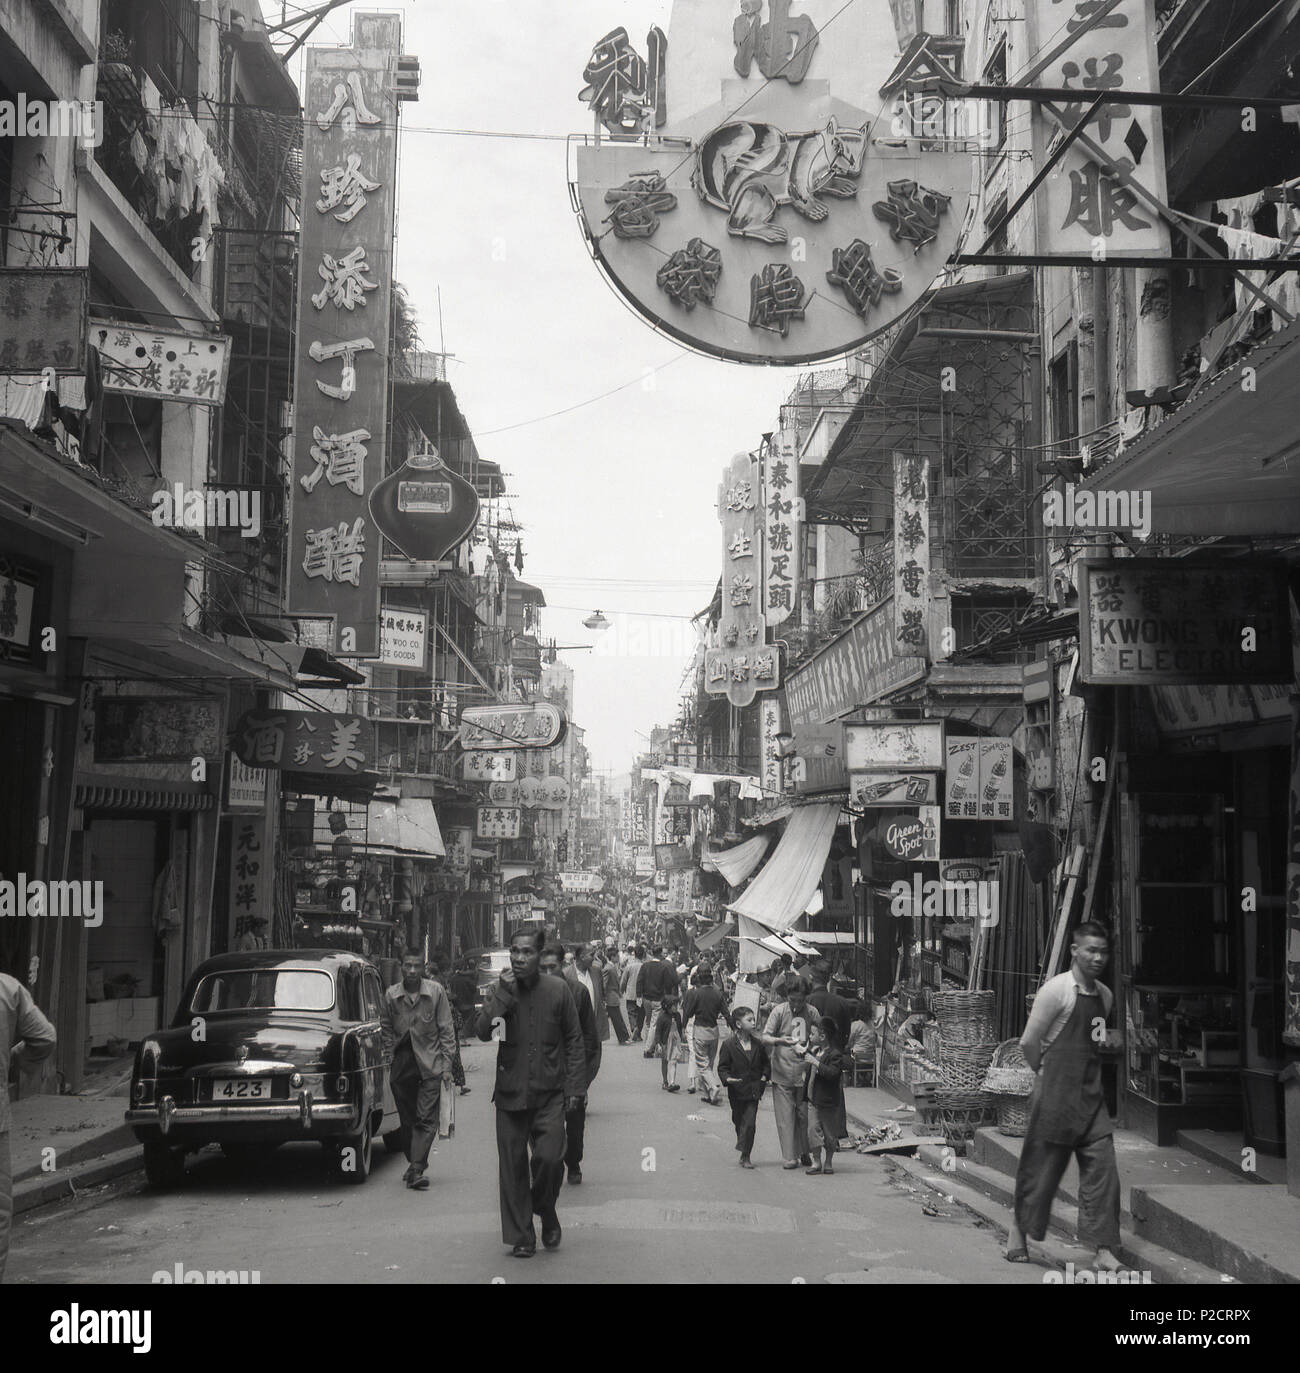 Anni '50, storico, una foto di J Allan Cash da questa epoca guardando giù una strada nella città vecchia di Hong Kong, Asia, mostrando la gente che cammina per la strada, negozi, insegne cinesi e l'architettura della zona, con la sistemazione vivente sopra i punti vendita al dettaglio. Anche nella foto, parcheggiato in strada, un'auto dell'epoca con targa, 423. Foto Stock